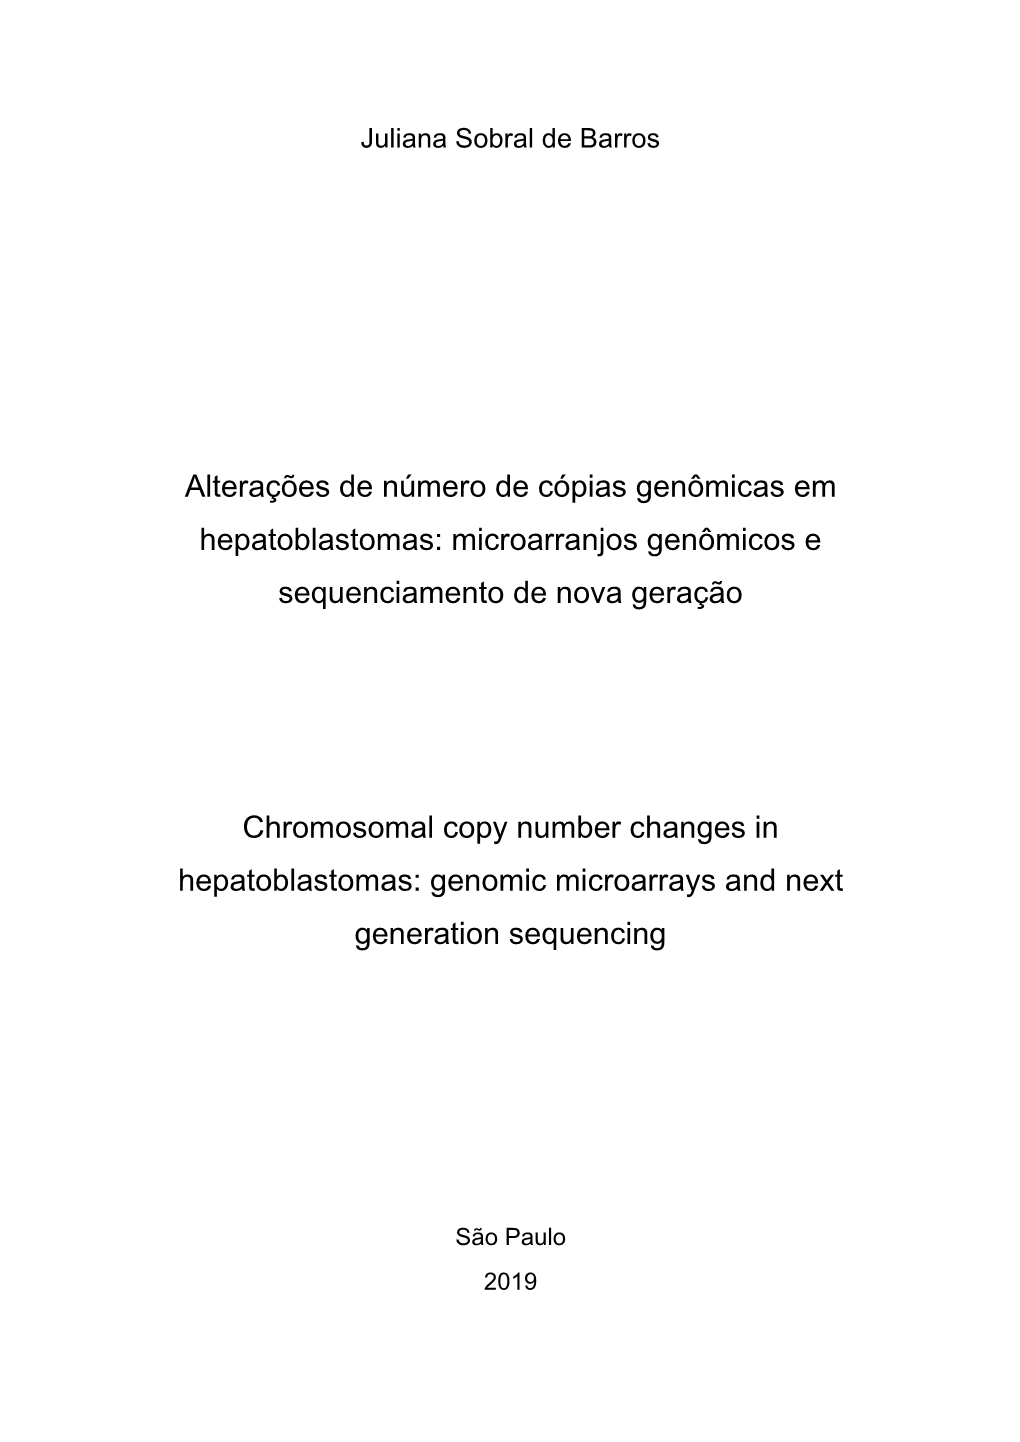 Alterações De Número De Cópias Genômicas Em Hepatoblastomas: Microarranjos Genômicos E Sequenciamento De Nova Geração